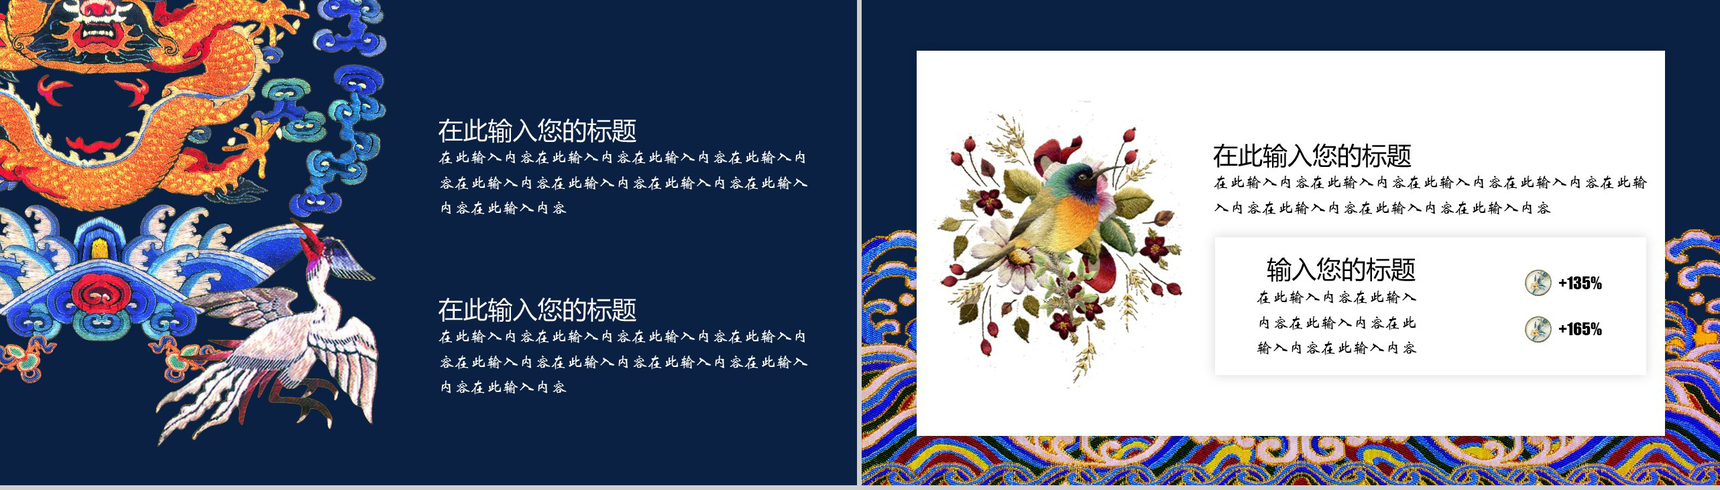 中国之美刺绣传统手艺PPT模板-11